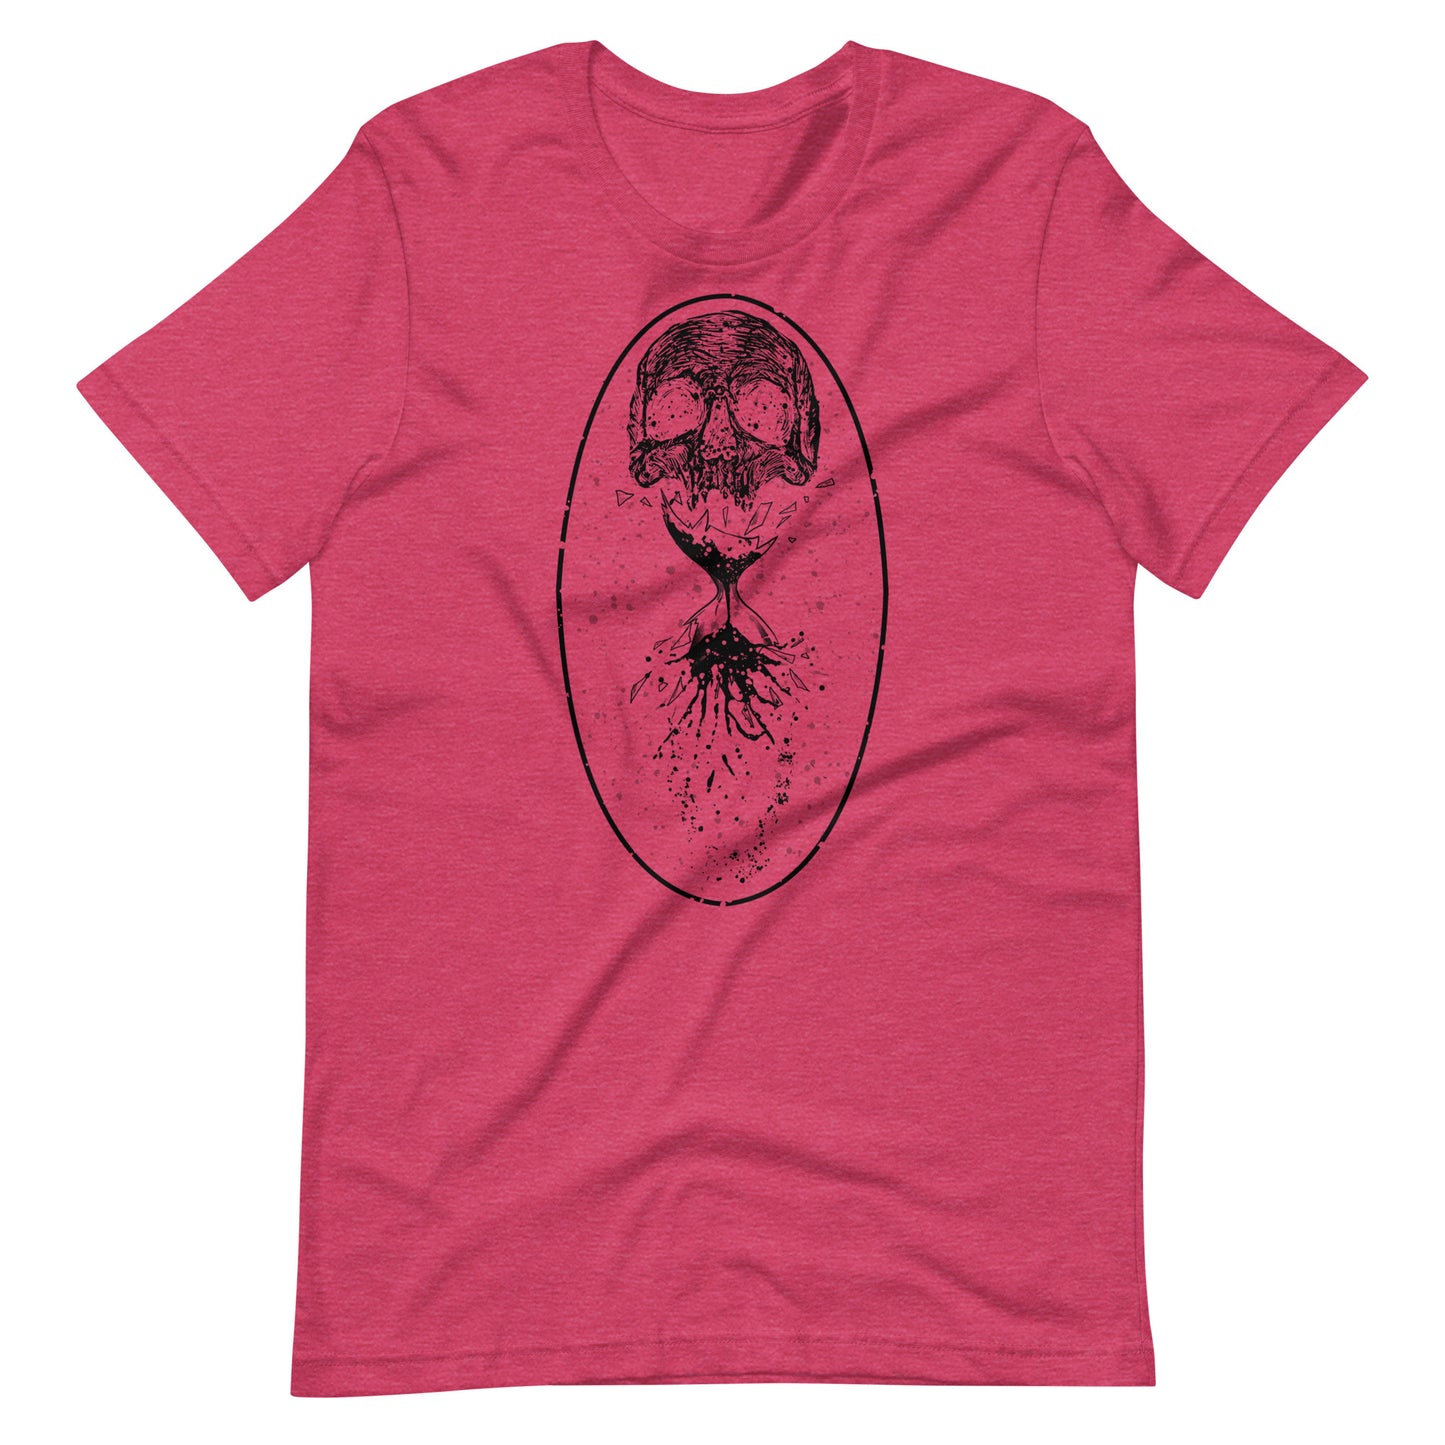 Destruction Black - Men's t-shirt - Heather Raspberry Front